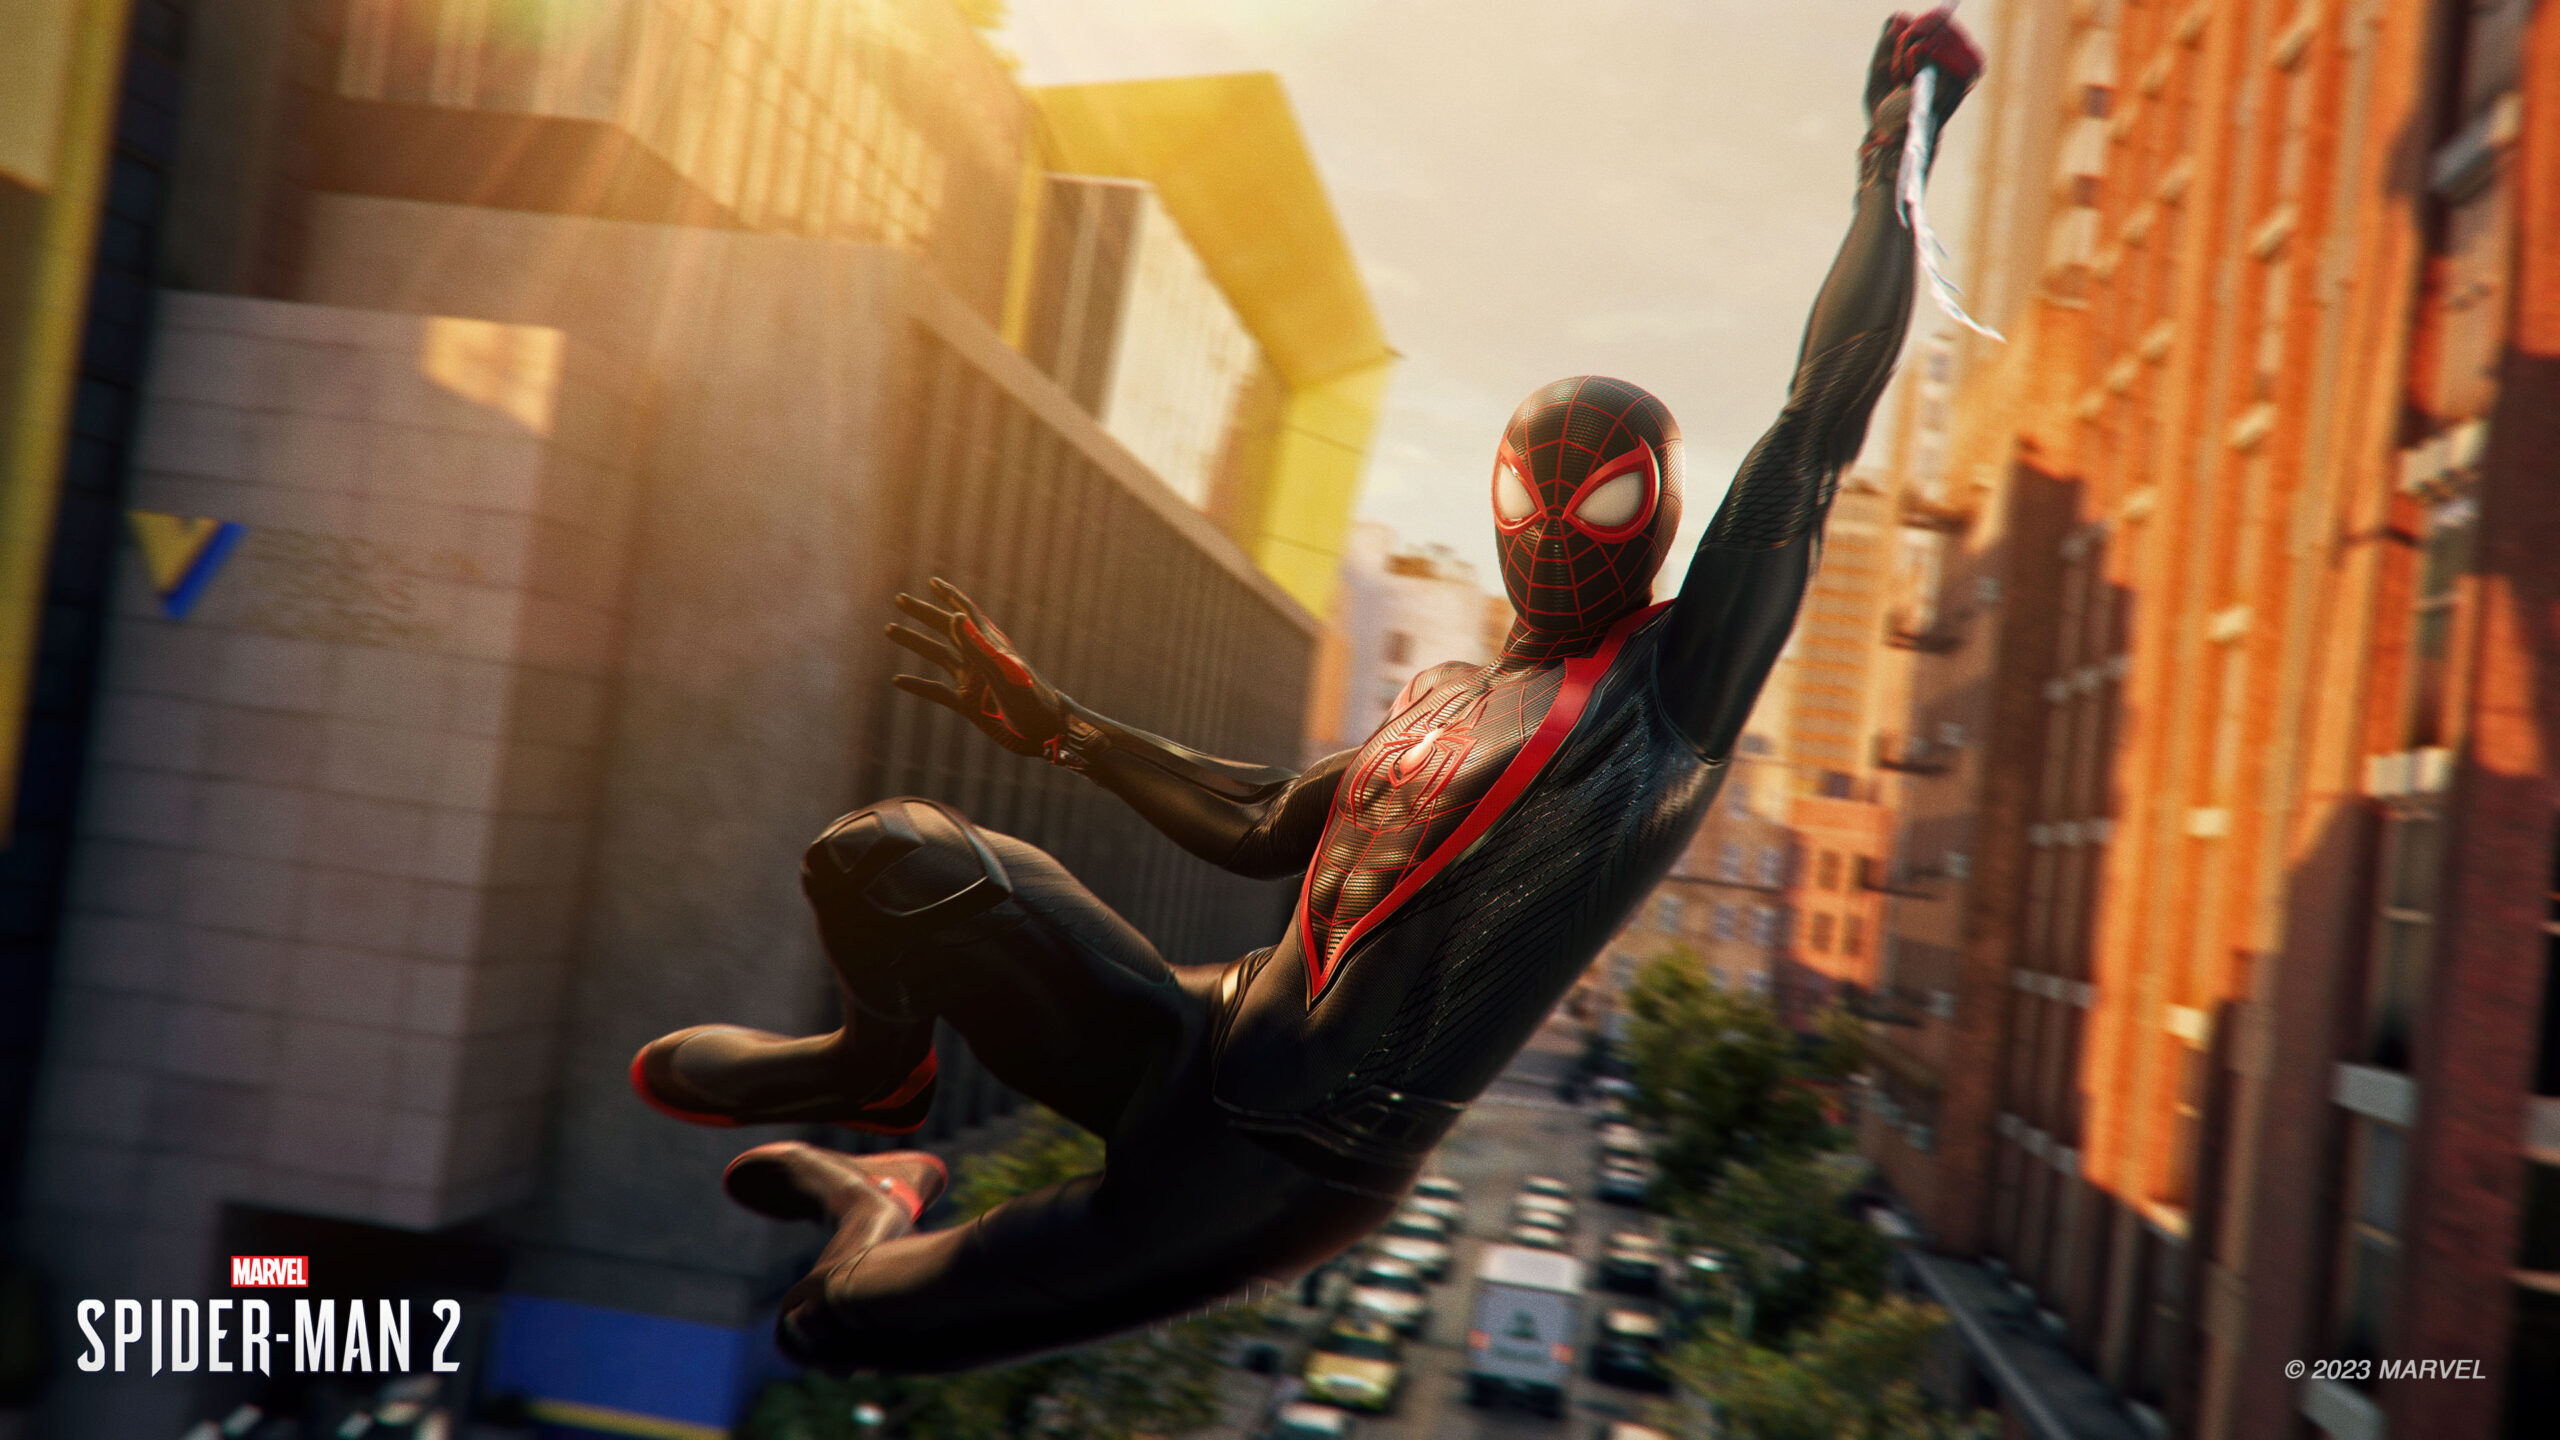 A screenshot from Spider-Man 2